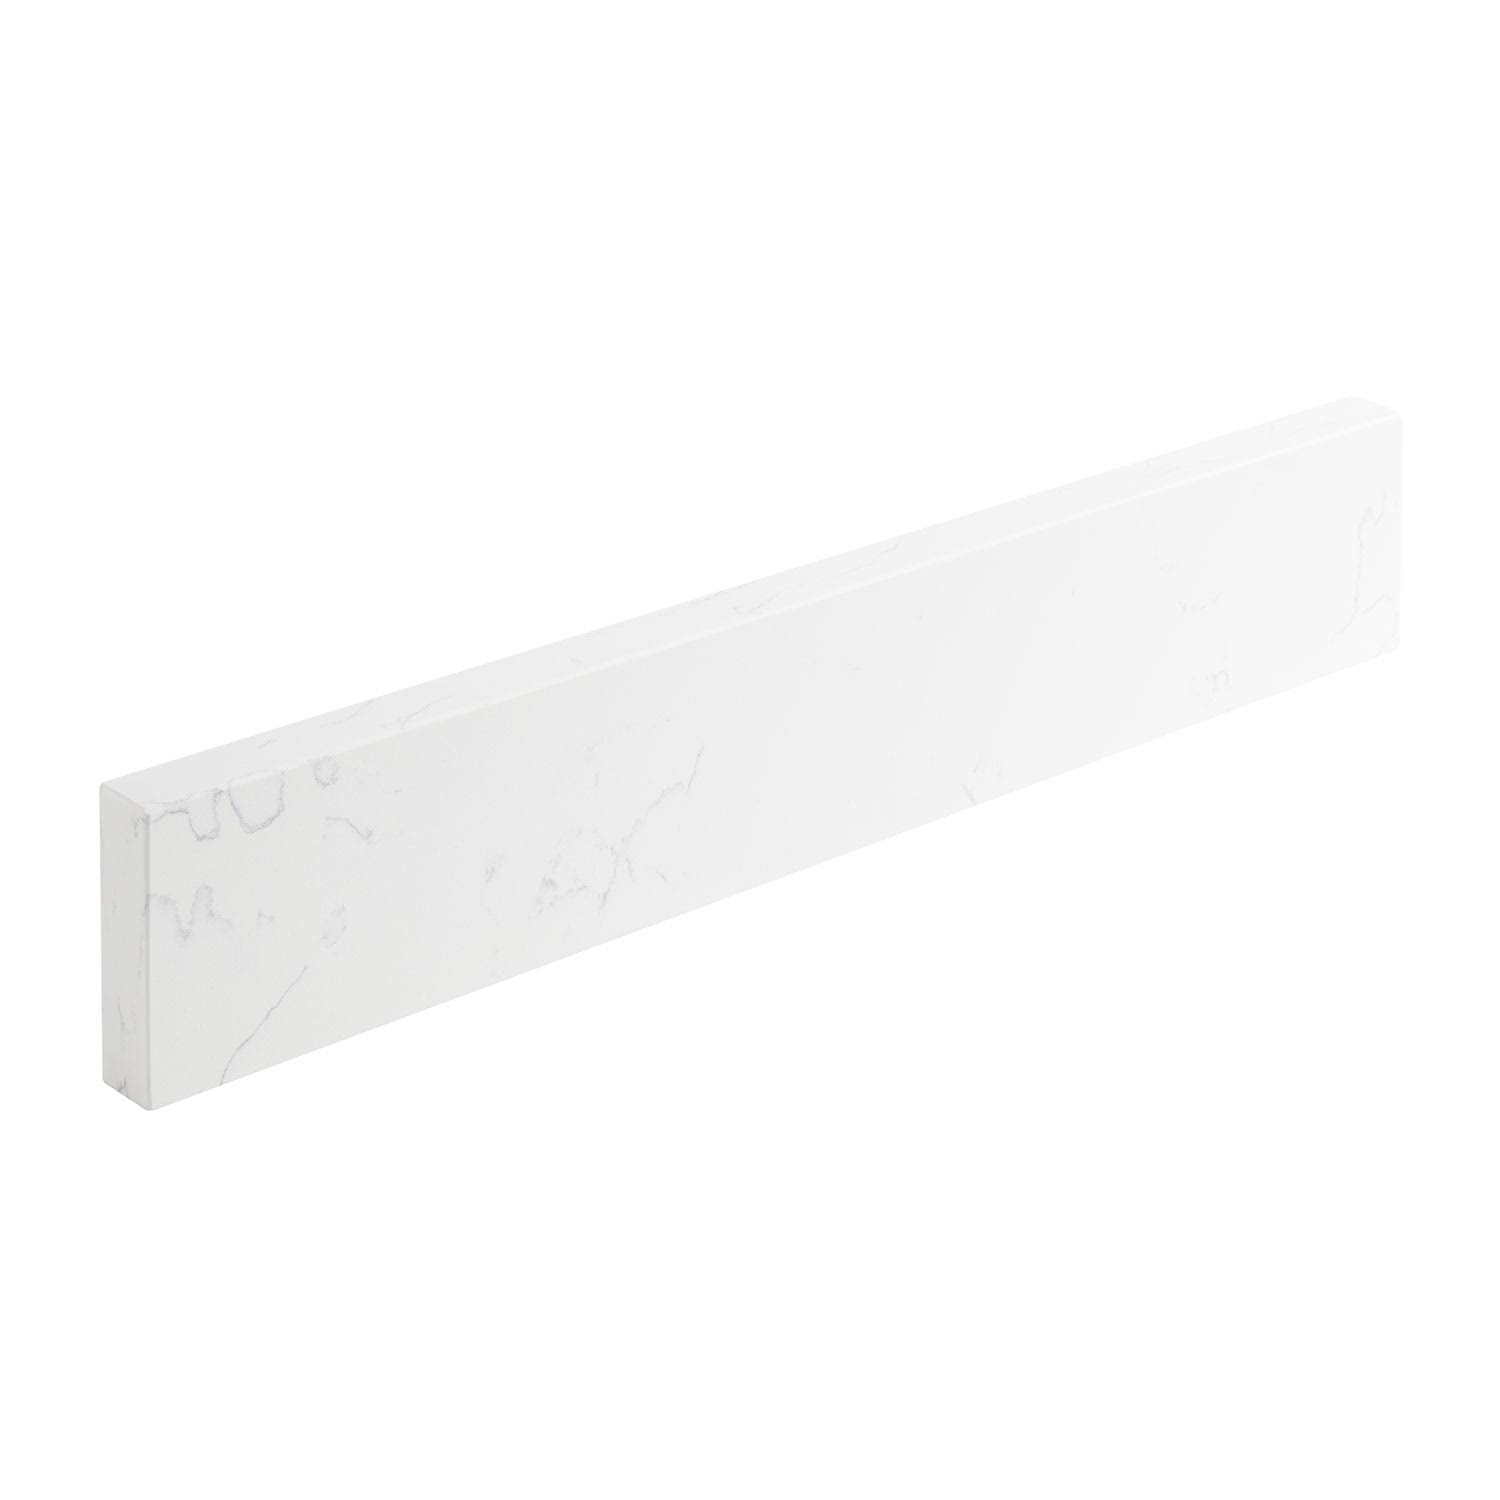 61x22 3cm Quartz Vanity Backsplash - Feathered White | Signature ...